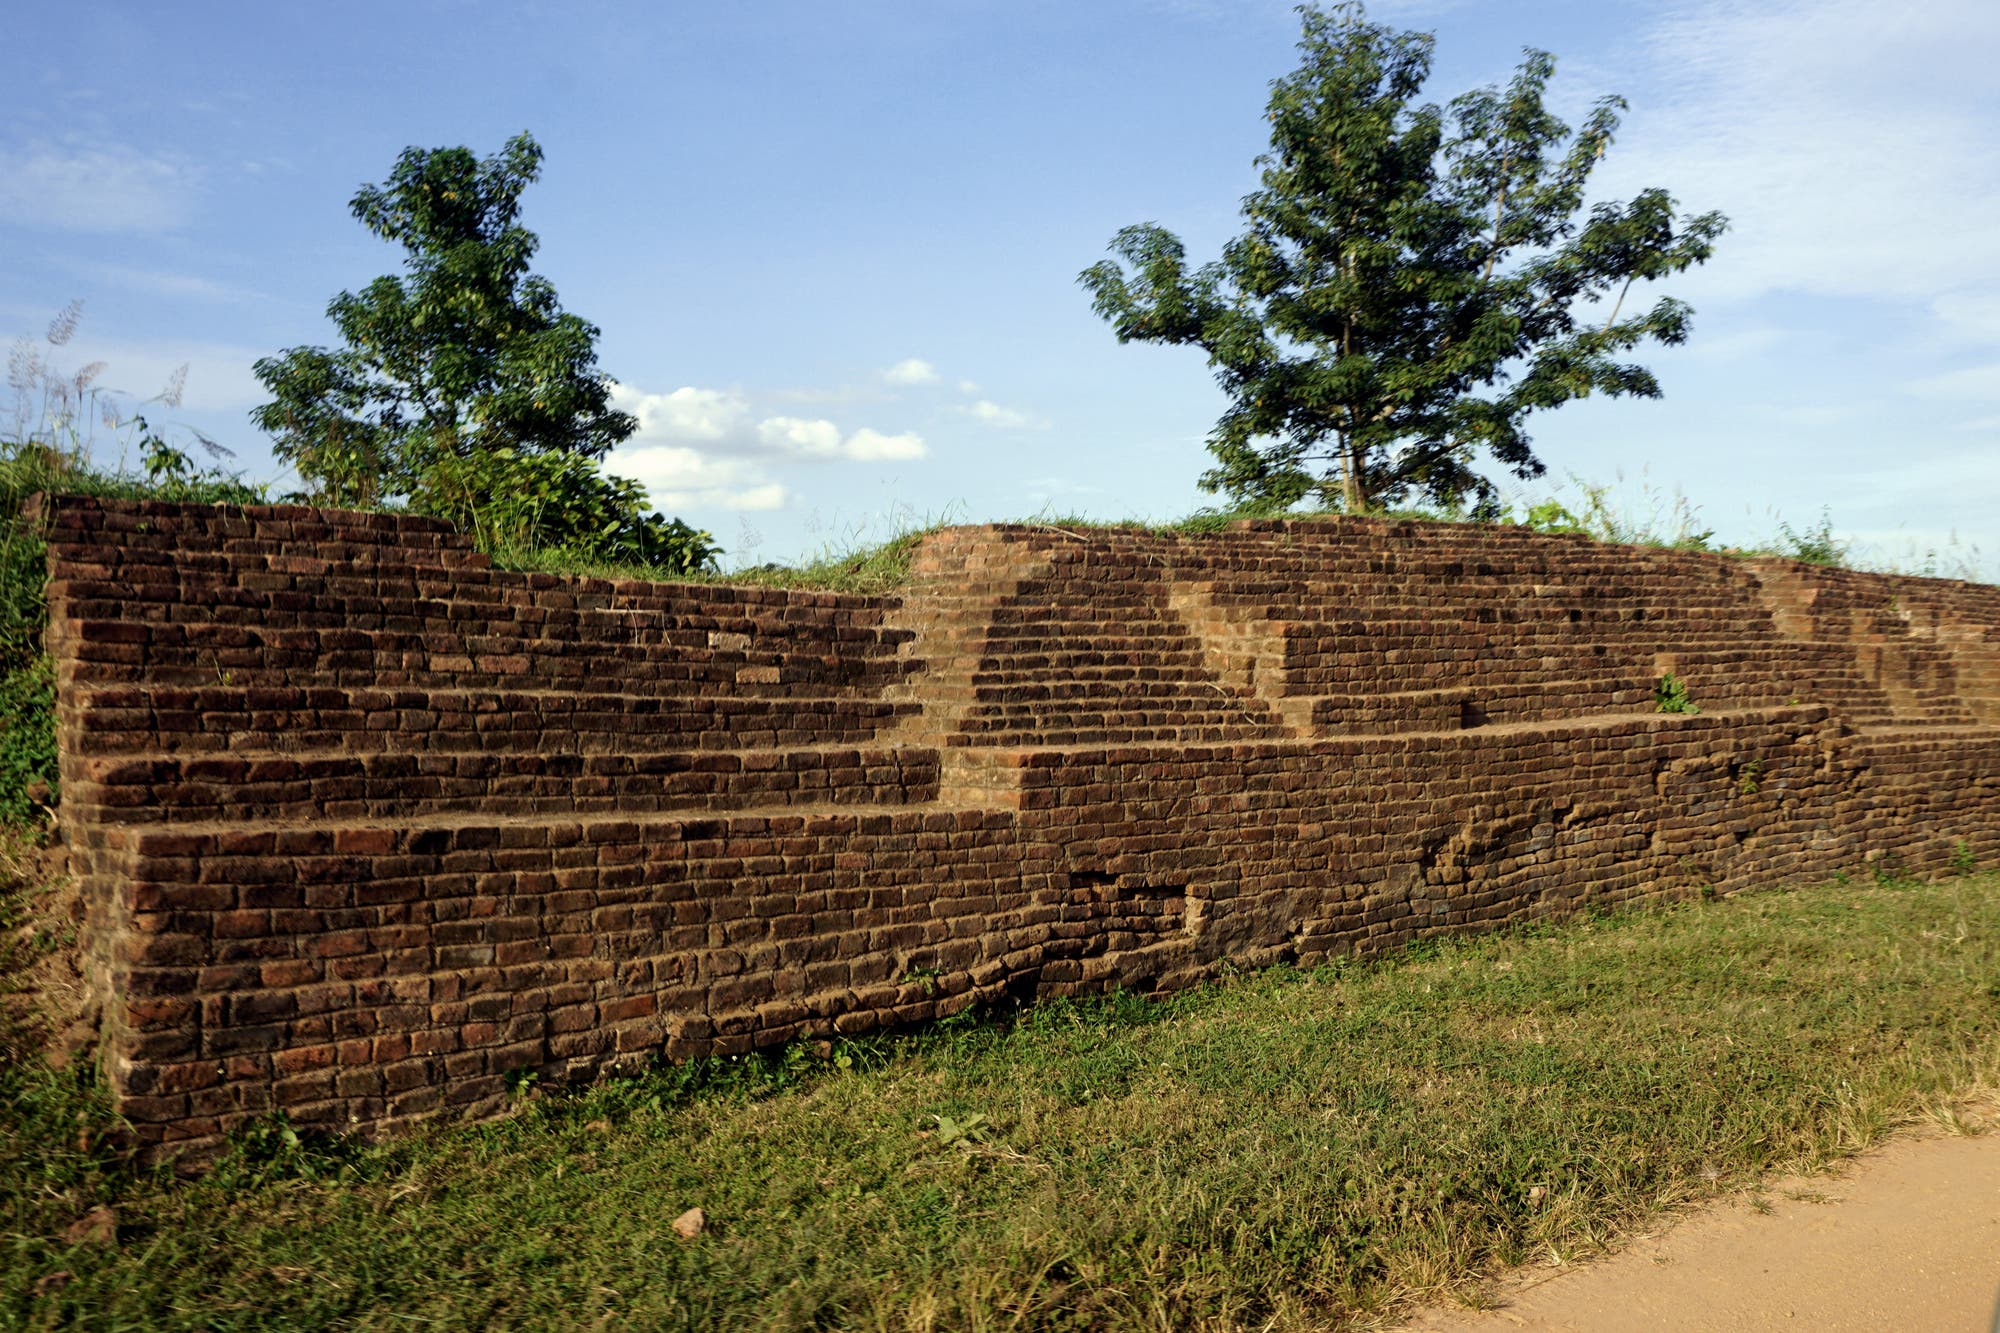 Palastmauer in Ziegelsteinbauweise